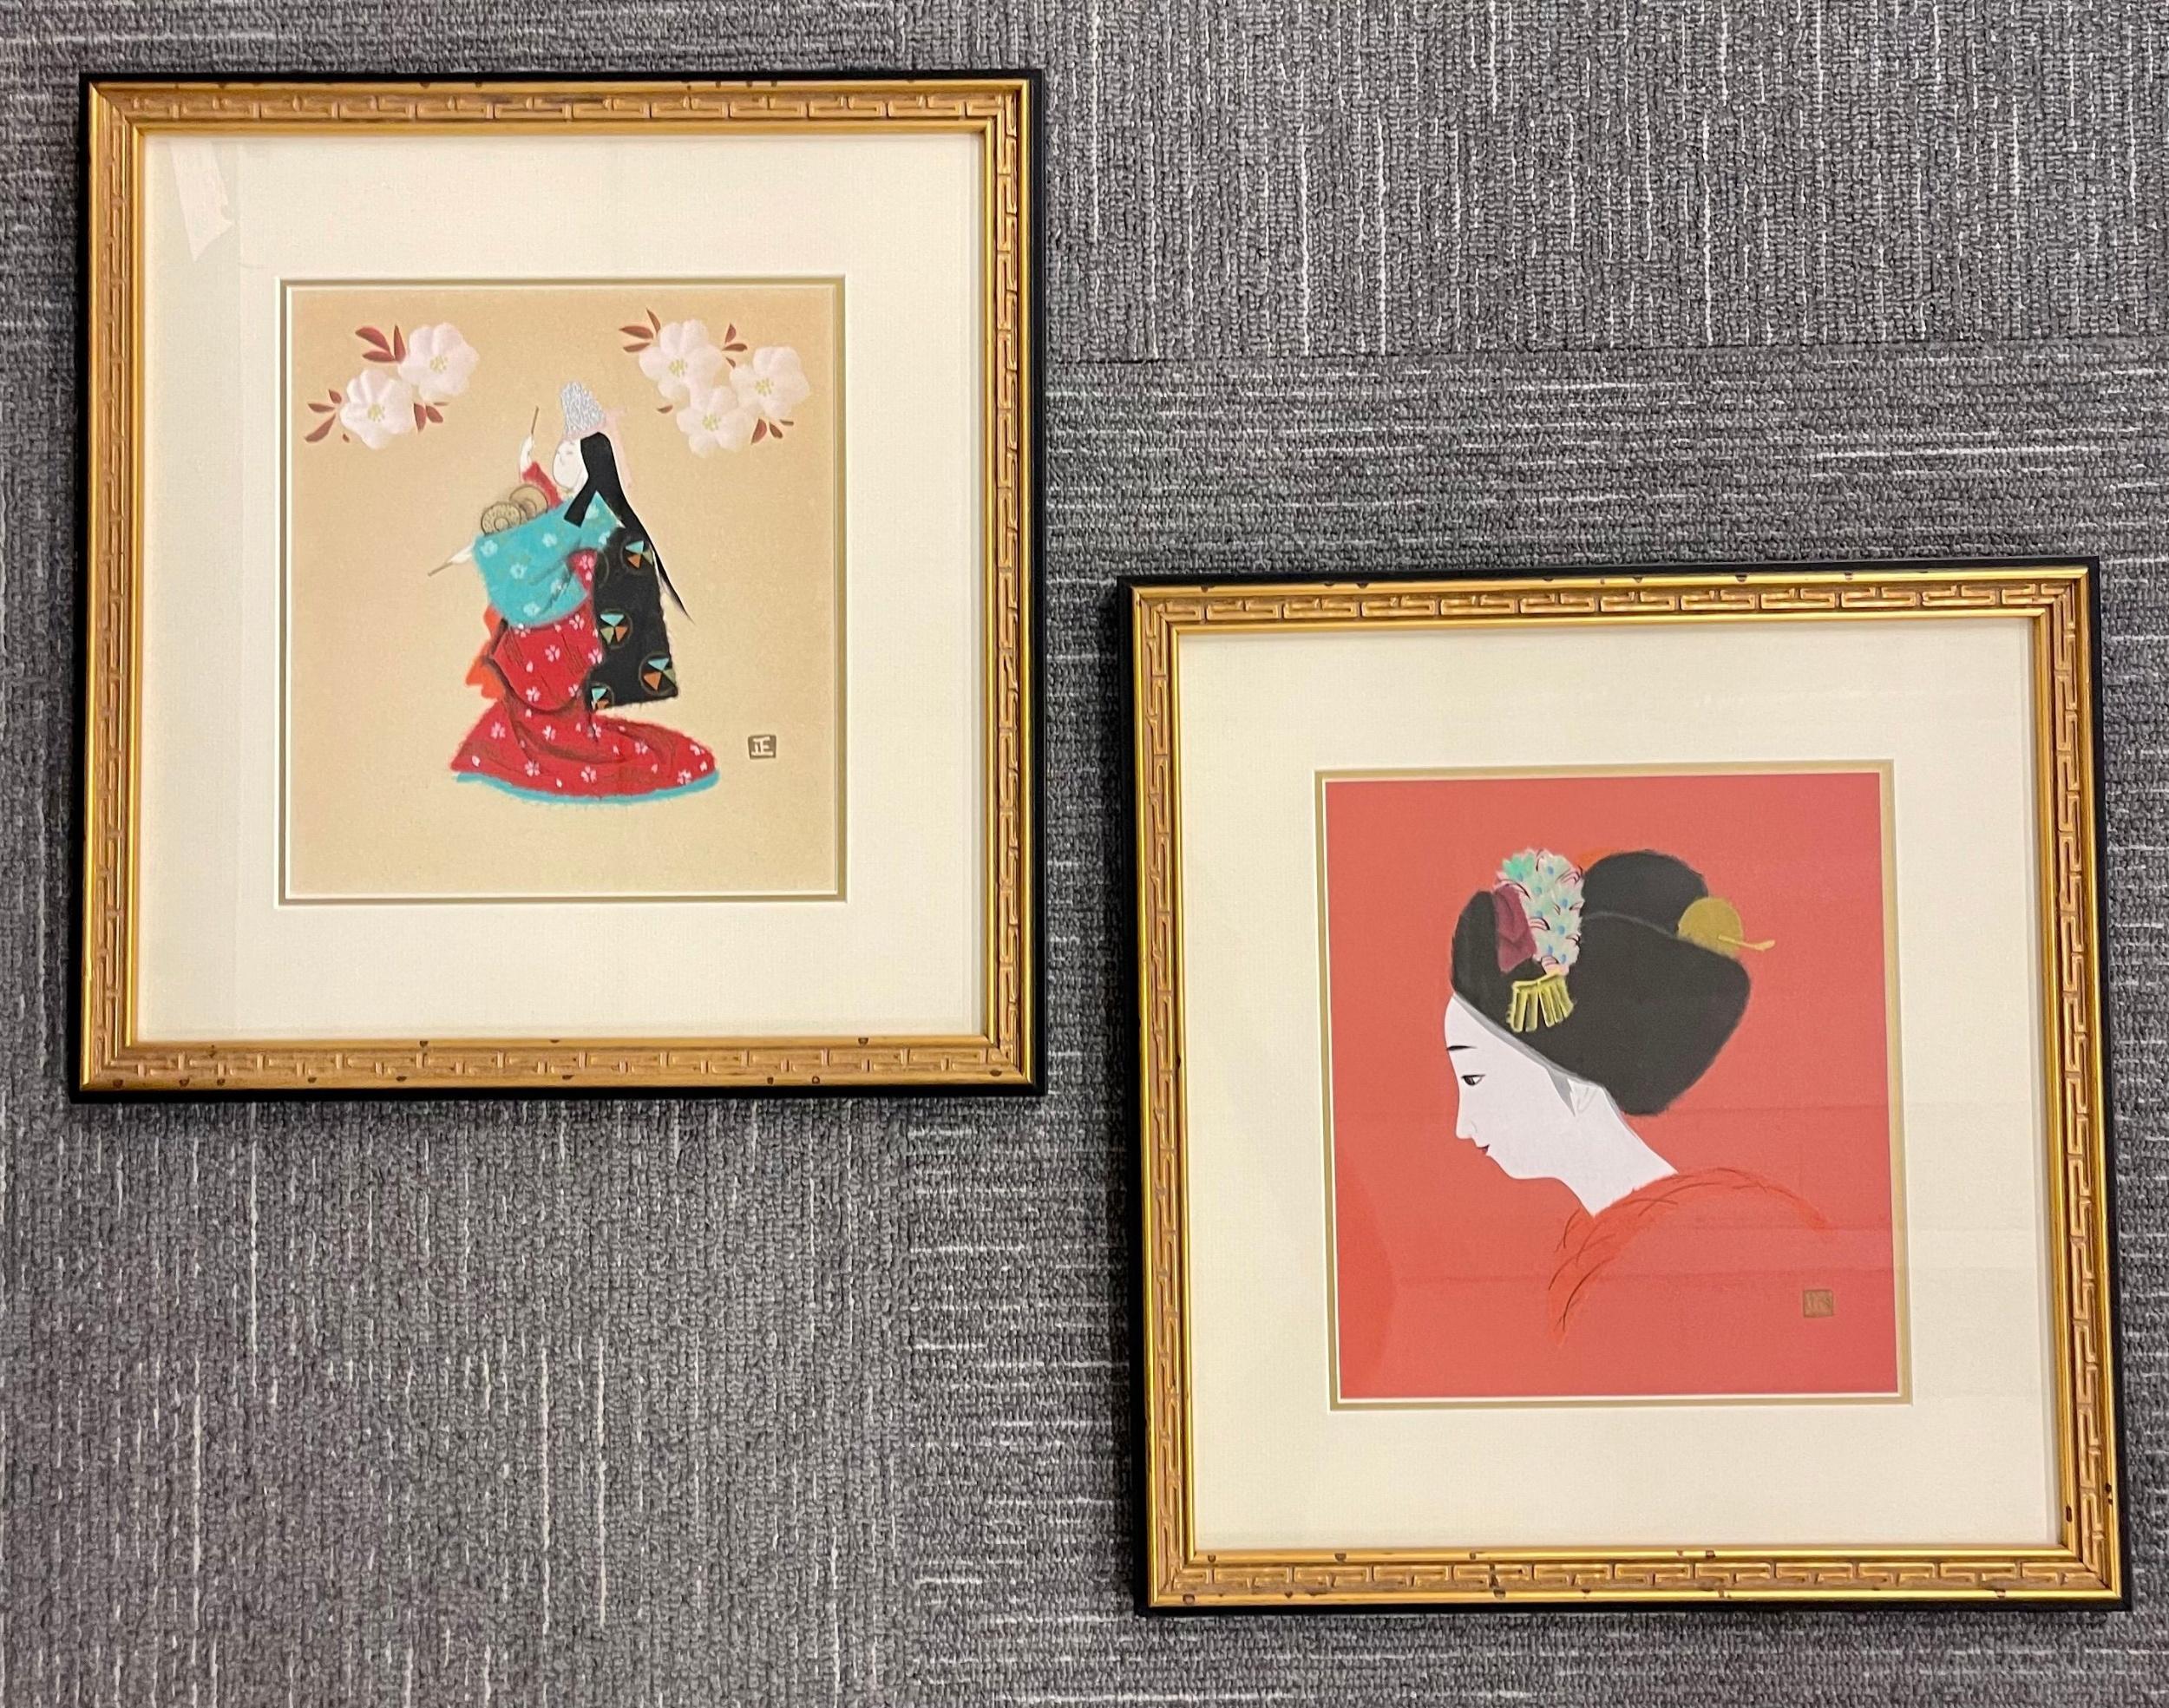 Une paire de blocs de bois japonais finement encadrés. Chacune d'elles représente une geisha en robe, les deux ayant une signature d'artiste en japonais. Tous deux sont présentés dans de superbes cadres à passe-partout, dorés et en ébène, avec des